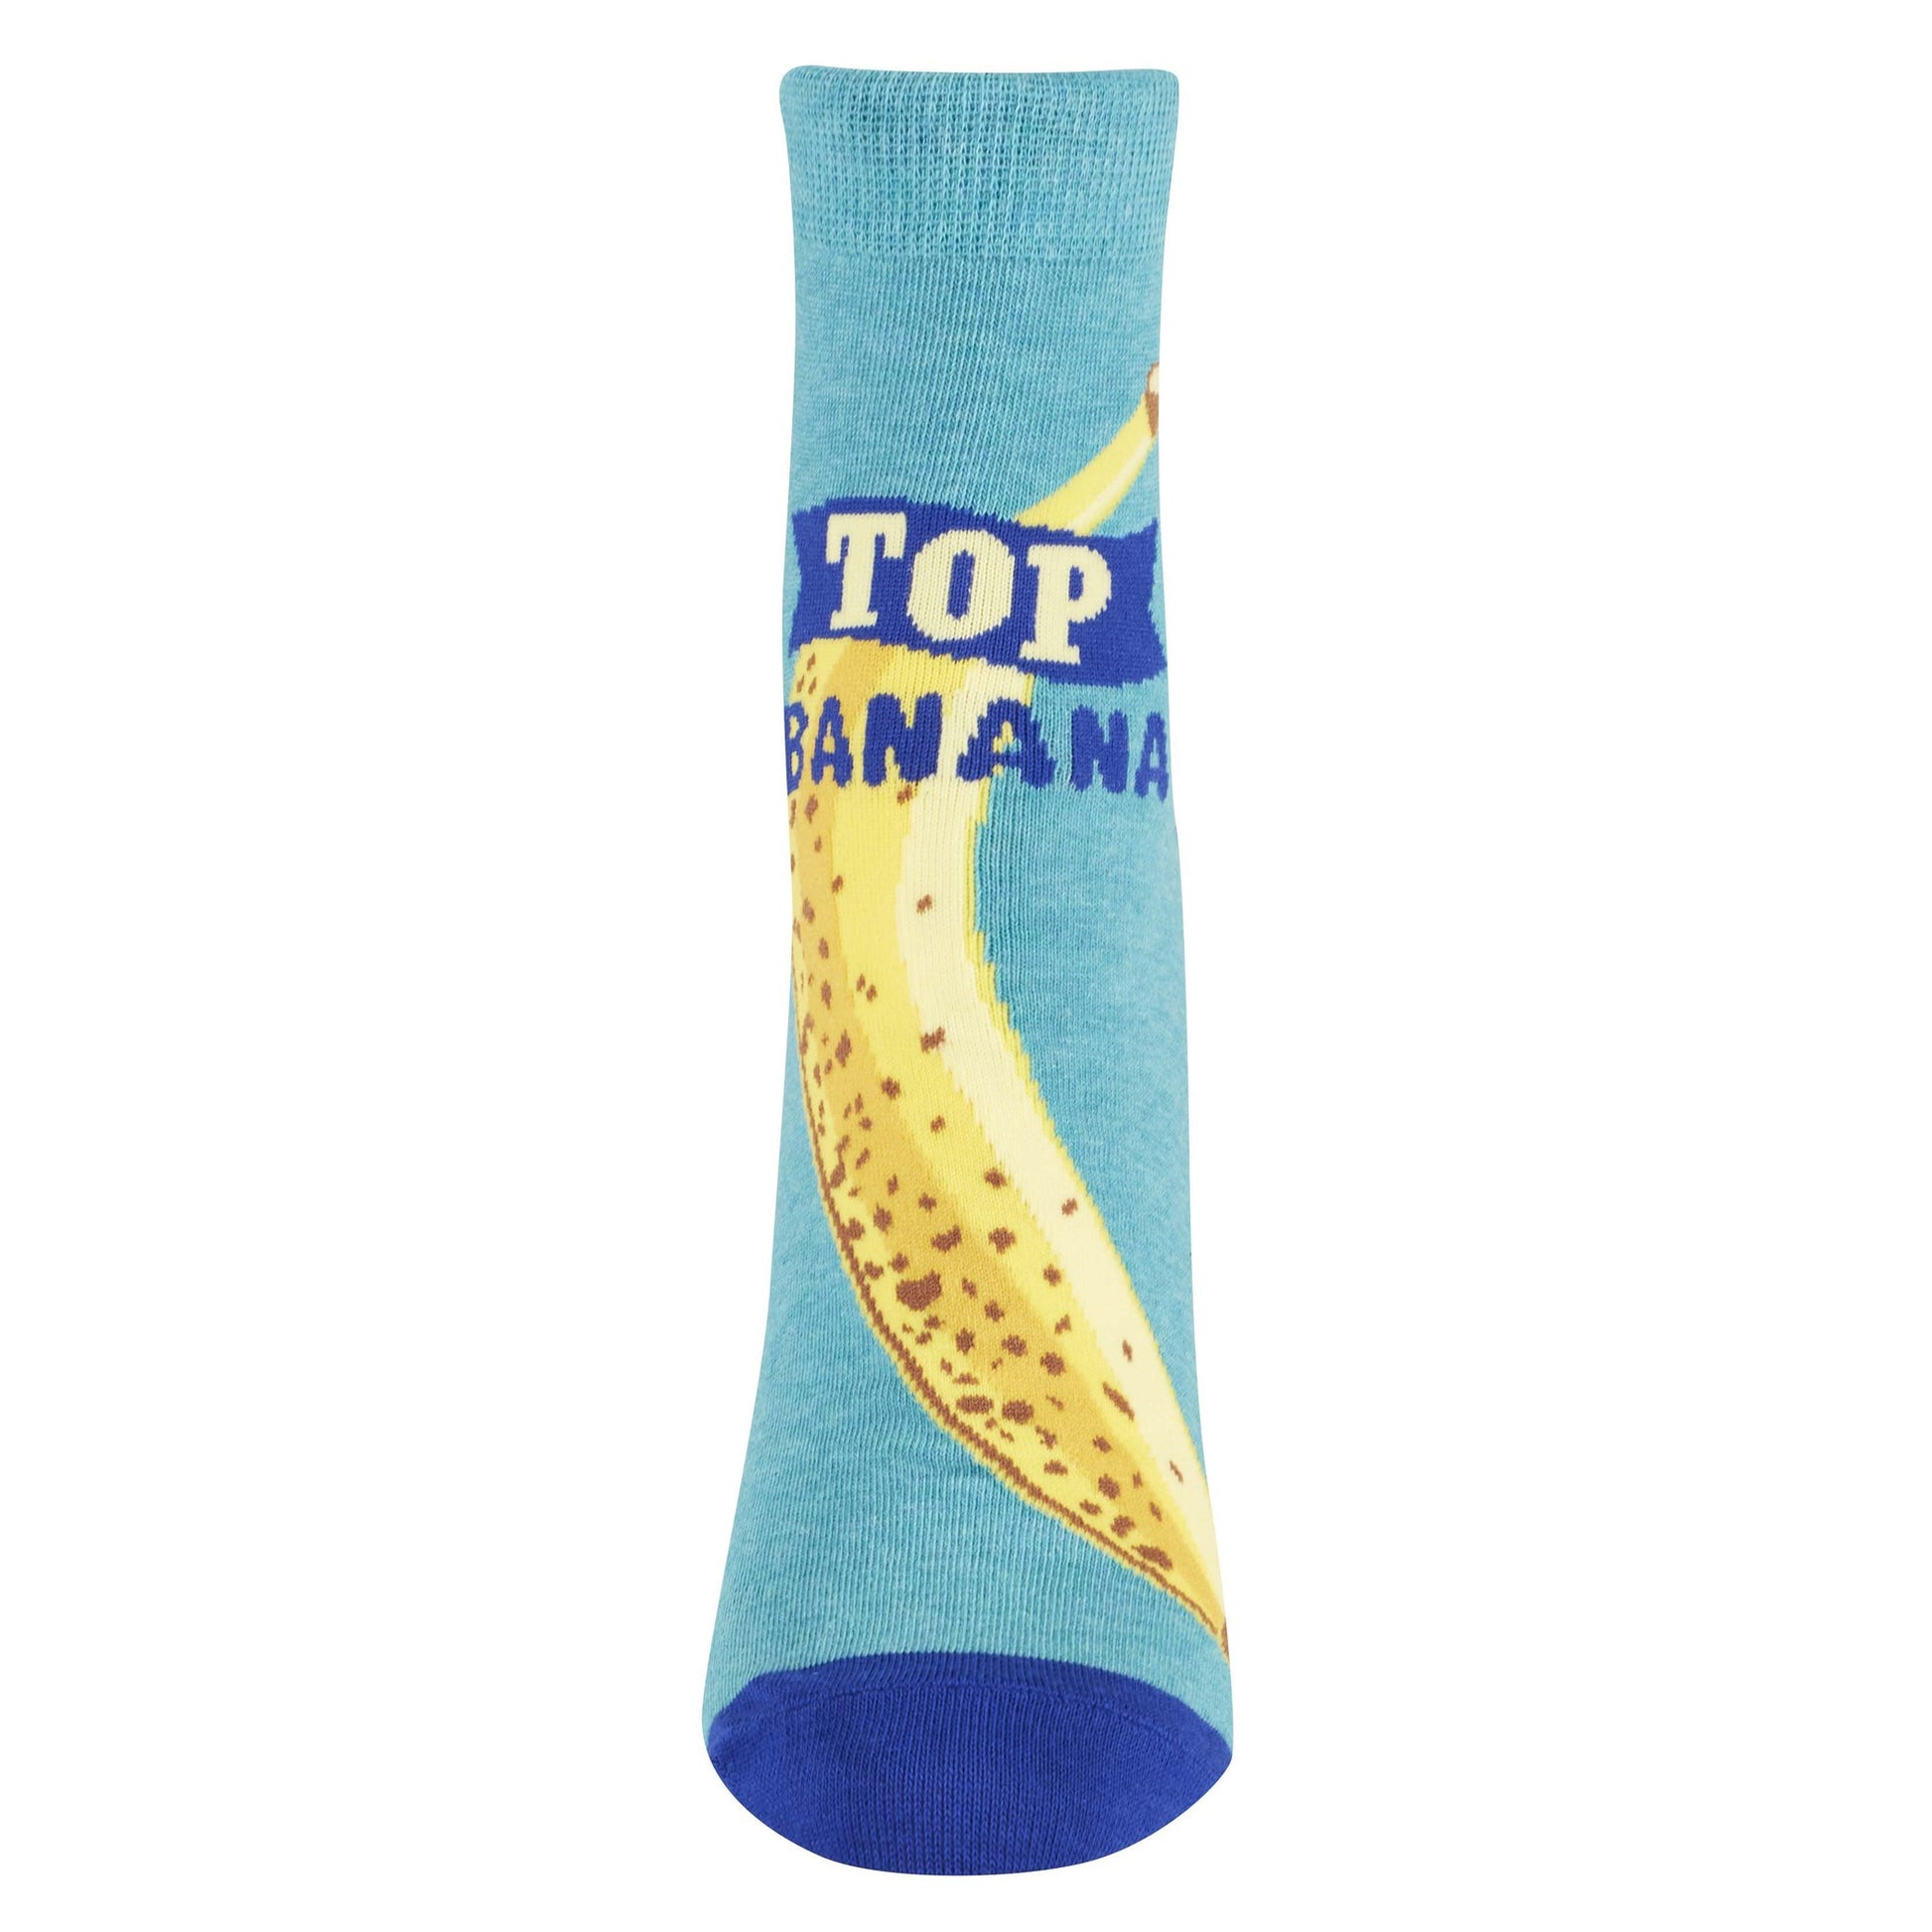 Top Banana Women's Ankle Socks in Blue | Cotton Footwear